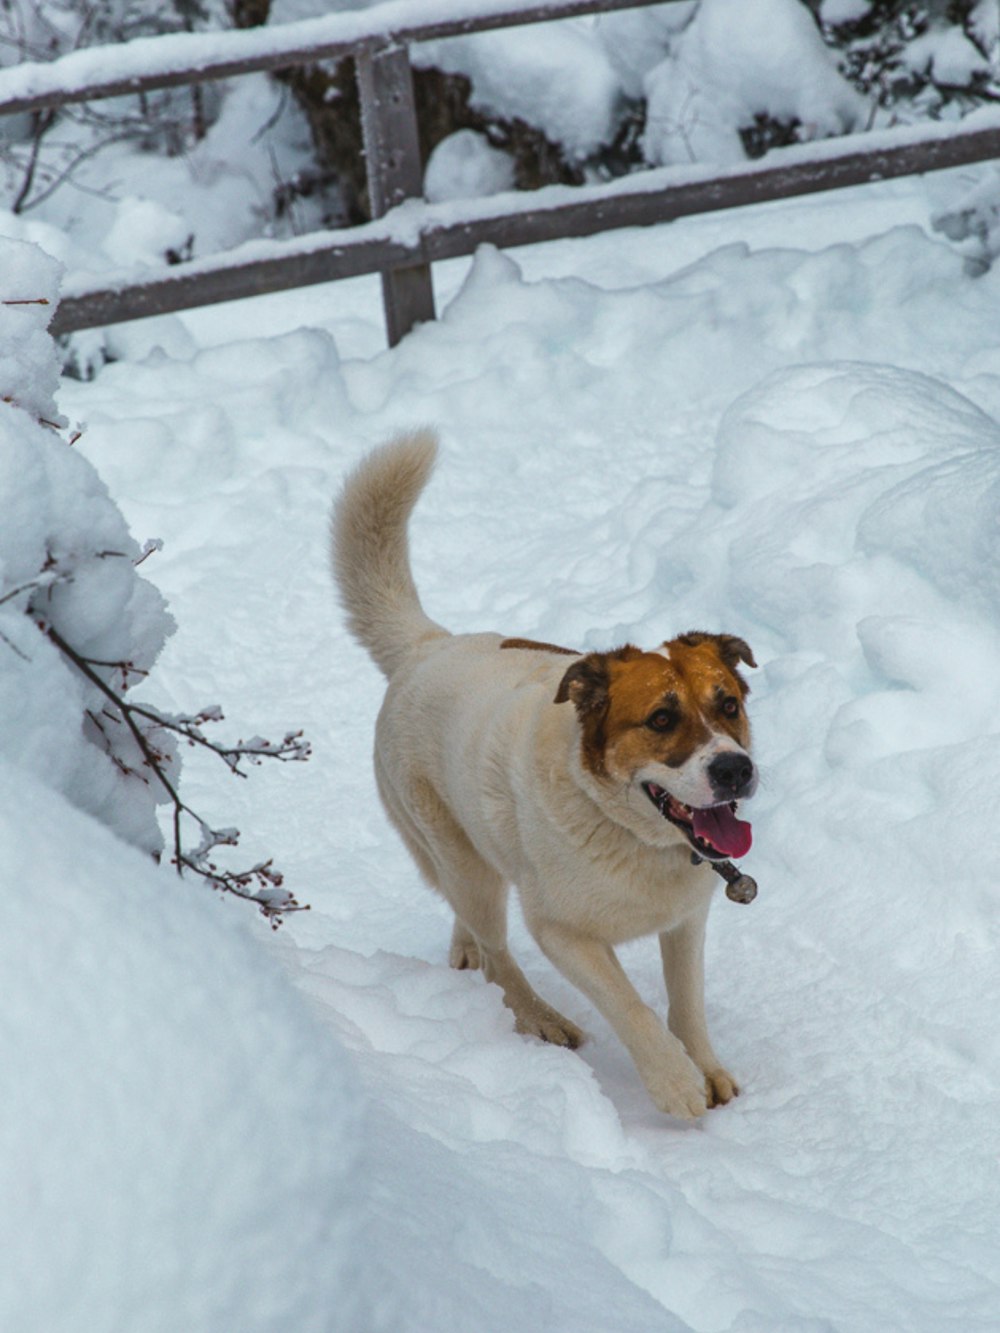 cane a pelo corto marrone e bianco su terreno coperto di neve durante il giorno